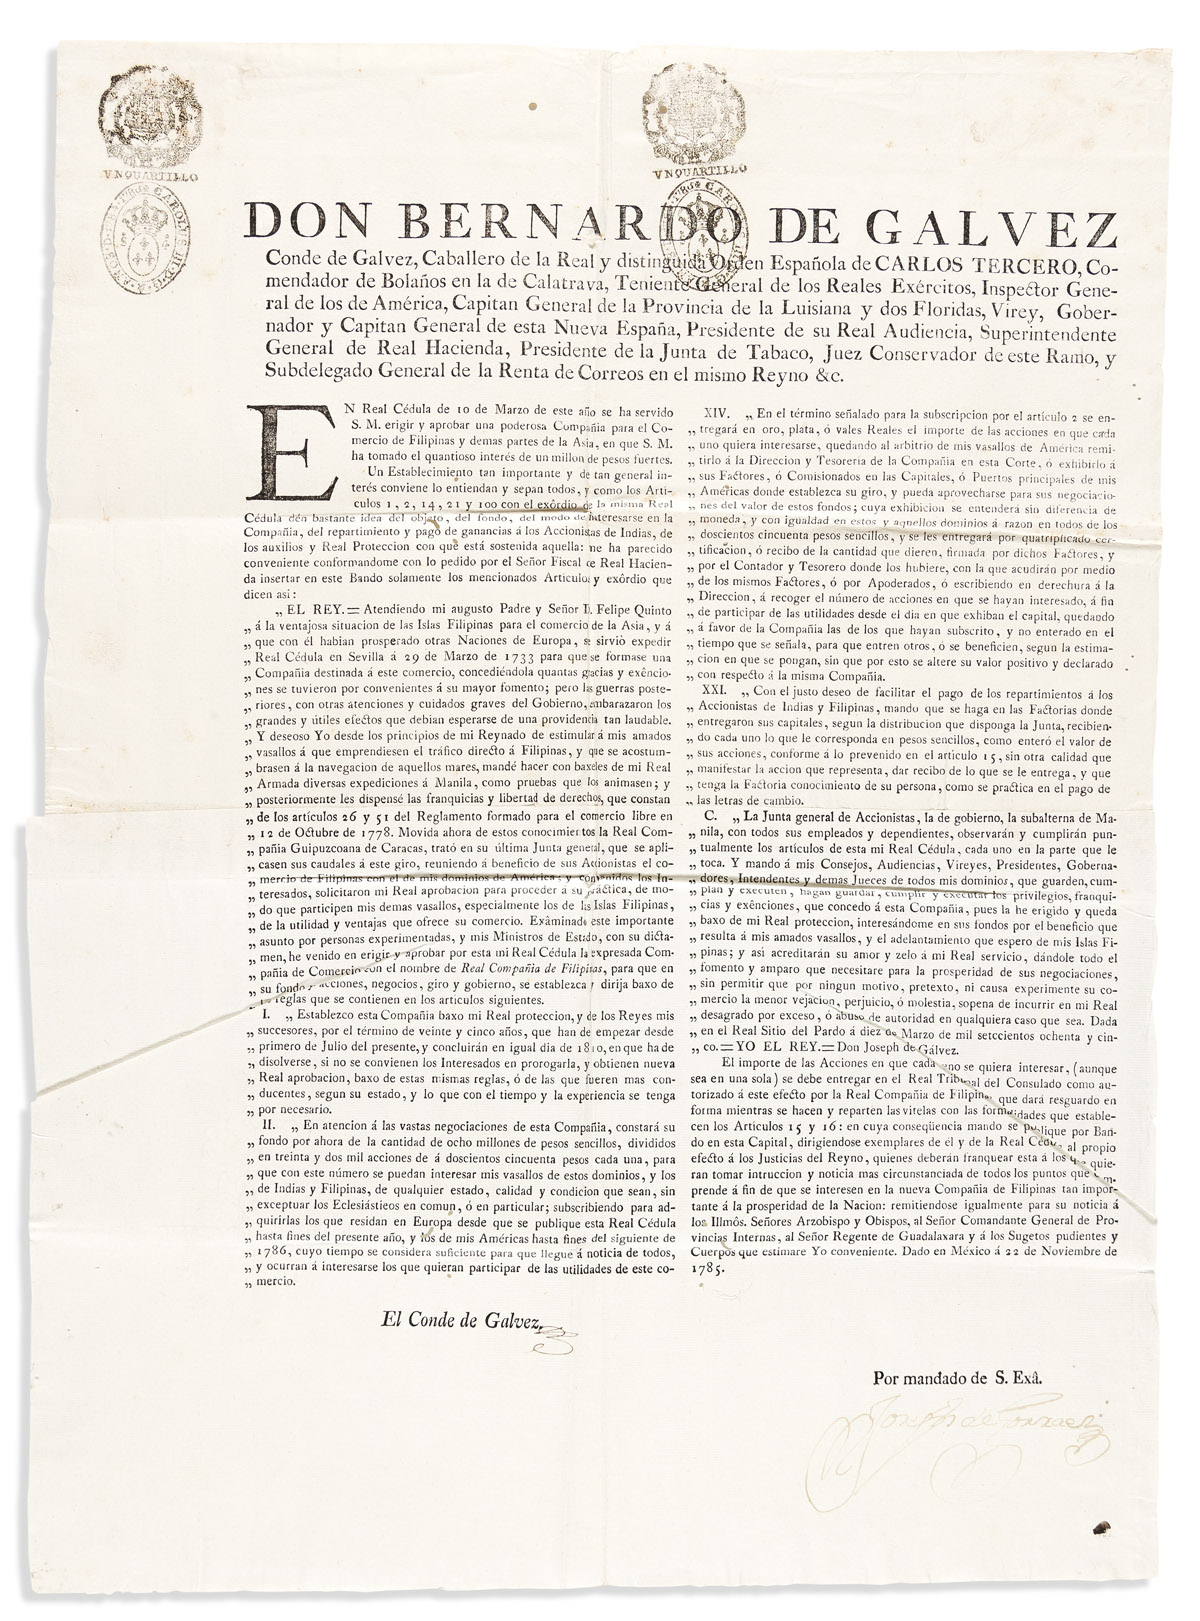 (MEXICAN IMPRINT--1785.) Bernardo de Gálvez. En real cédula de 10 de Marzo . . . aprobar una poderosa compañía para el comercio